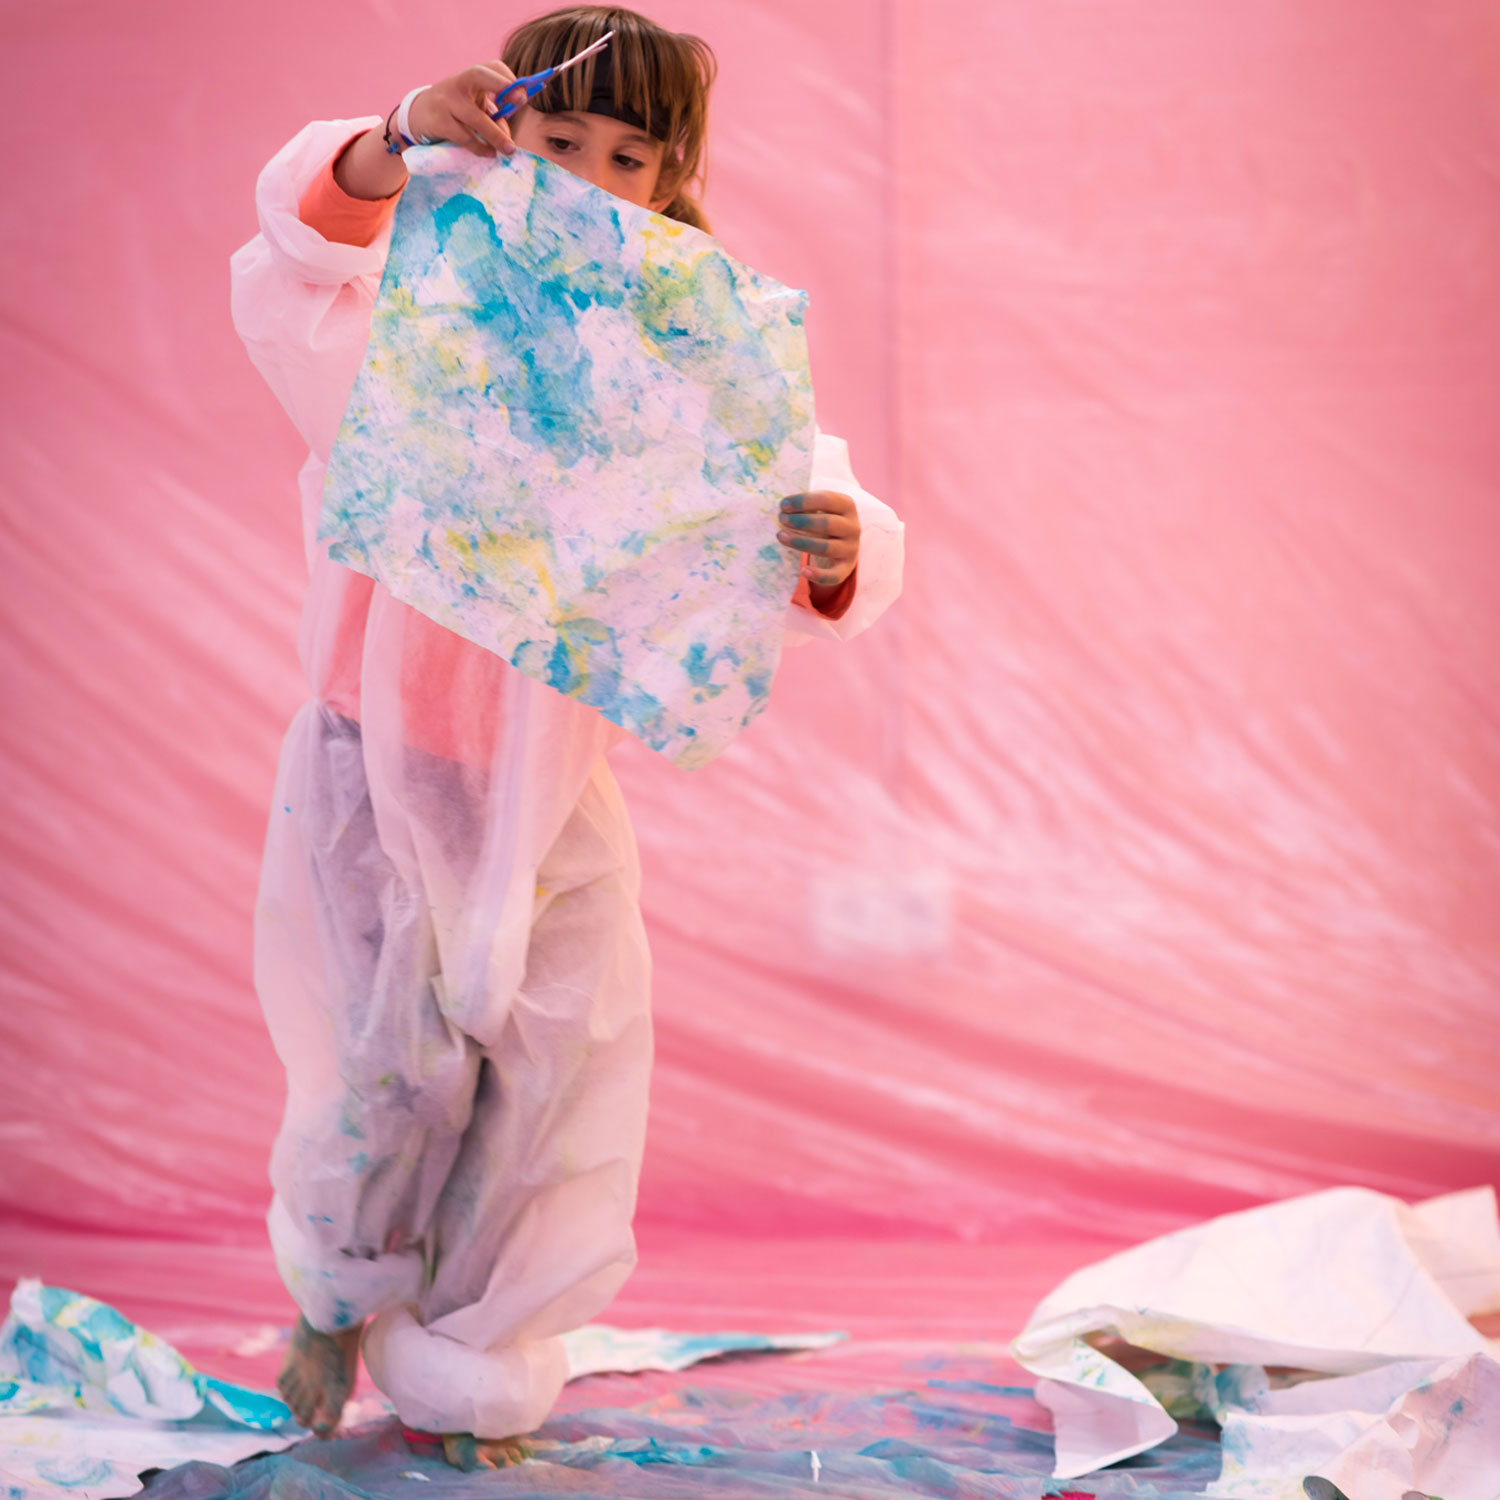 Vista frontal de una niña de pie, sosteniendo una hoja de papel grande que ha pintado. Lleva un traje protector y parece mostrar su obra. Tanto la pared como el suelo están cubiertos de un plástico en tonos rosas.